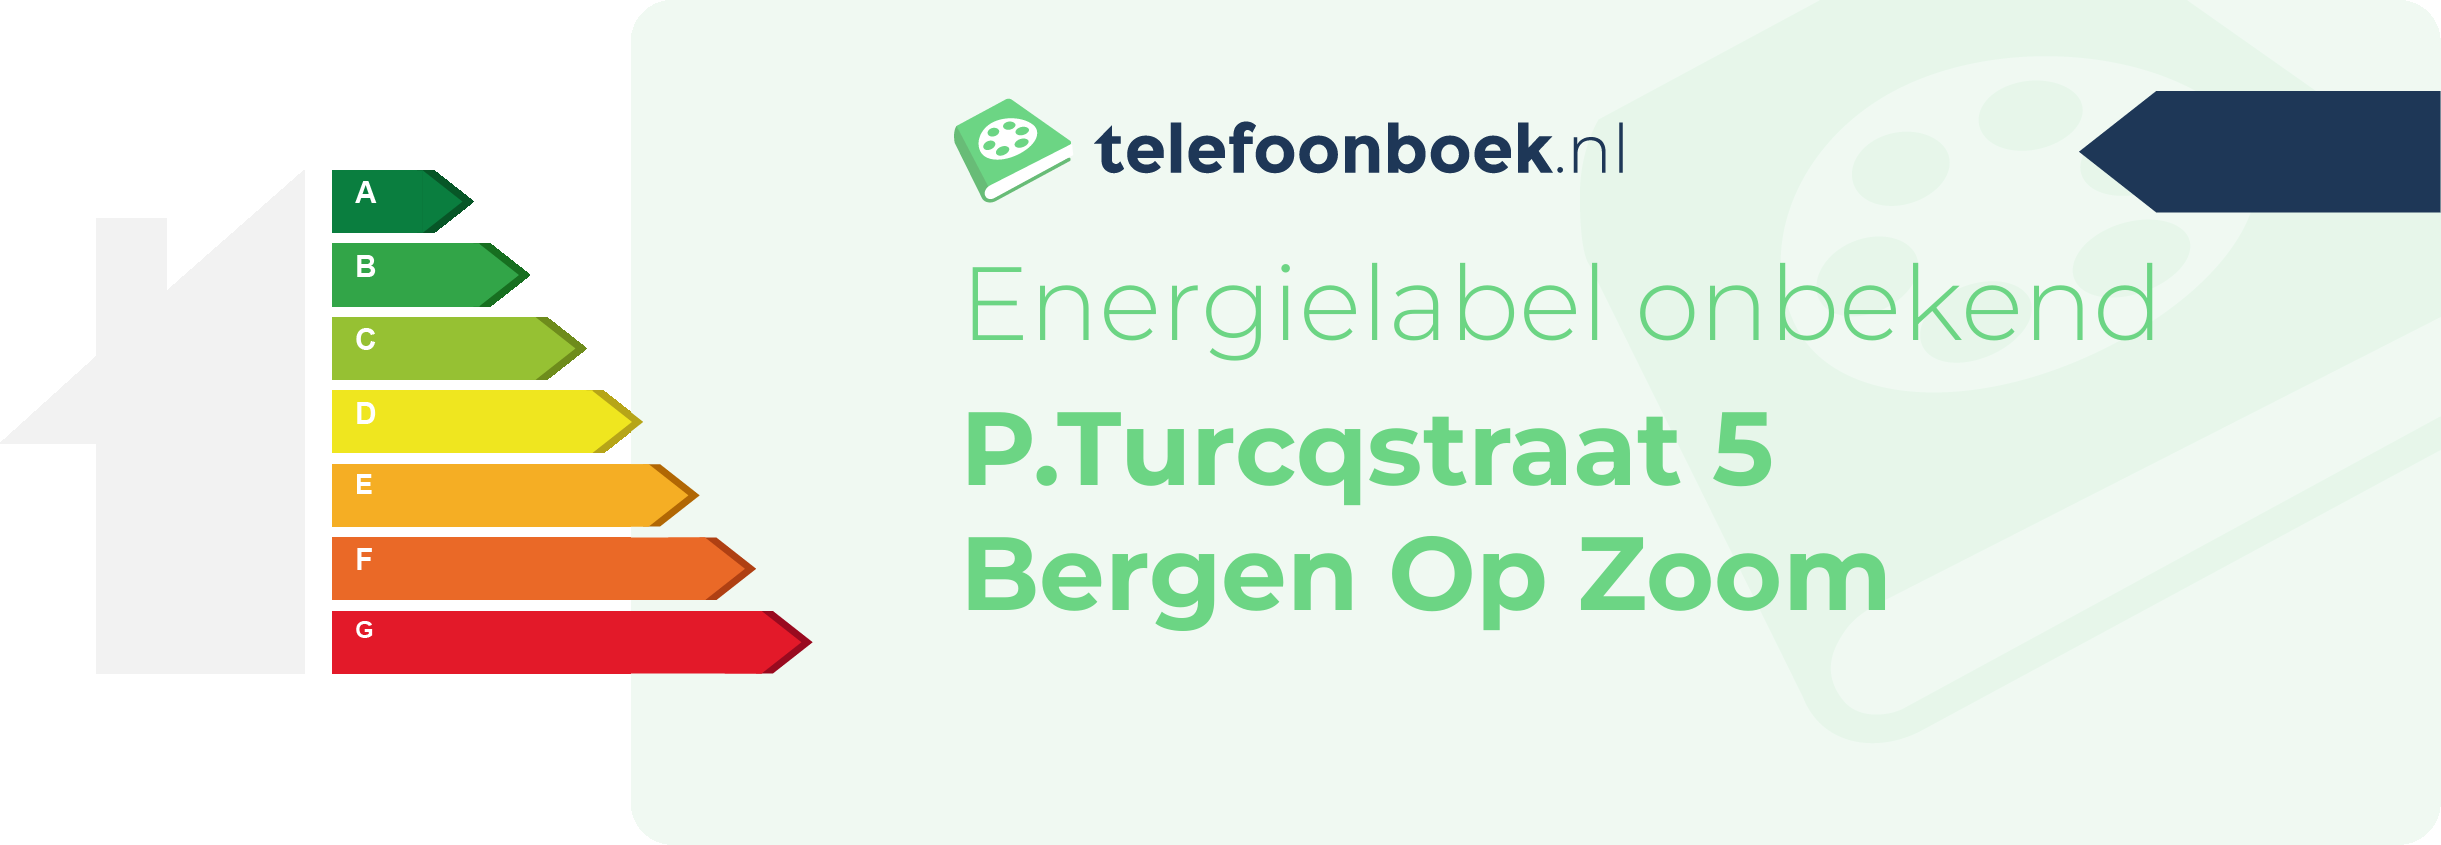 Energielabel P.Turcqstraat 5 Bergen Op Zoom